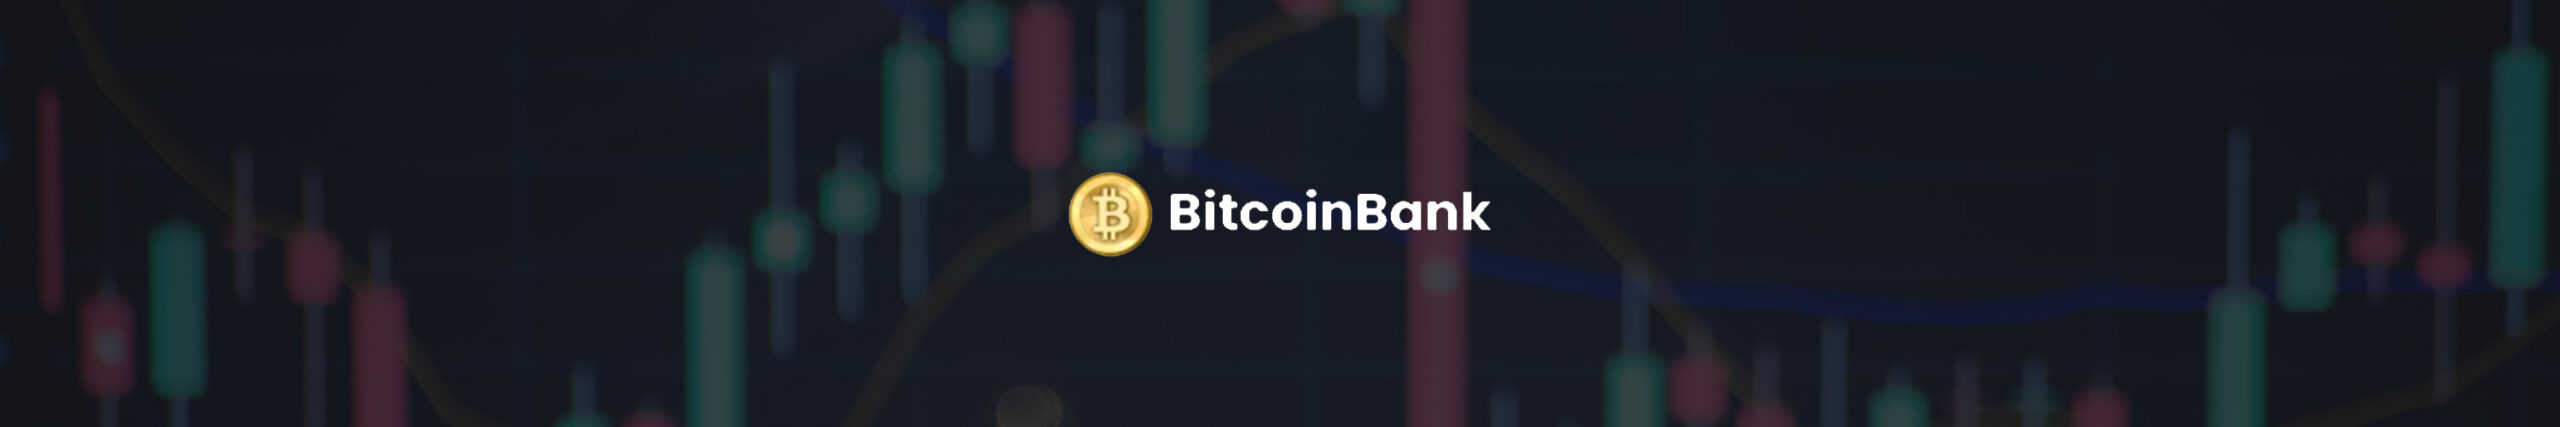 bitcoin bank banner